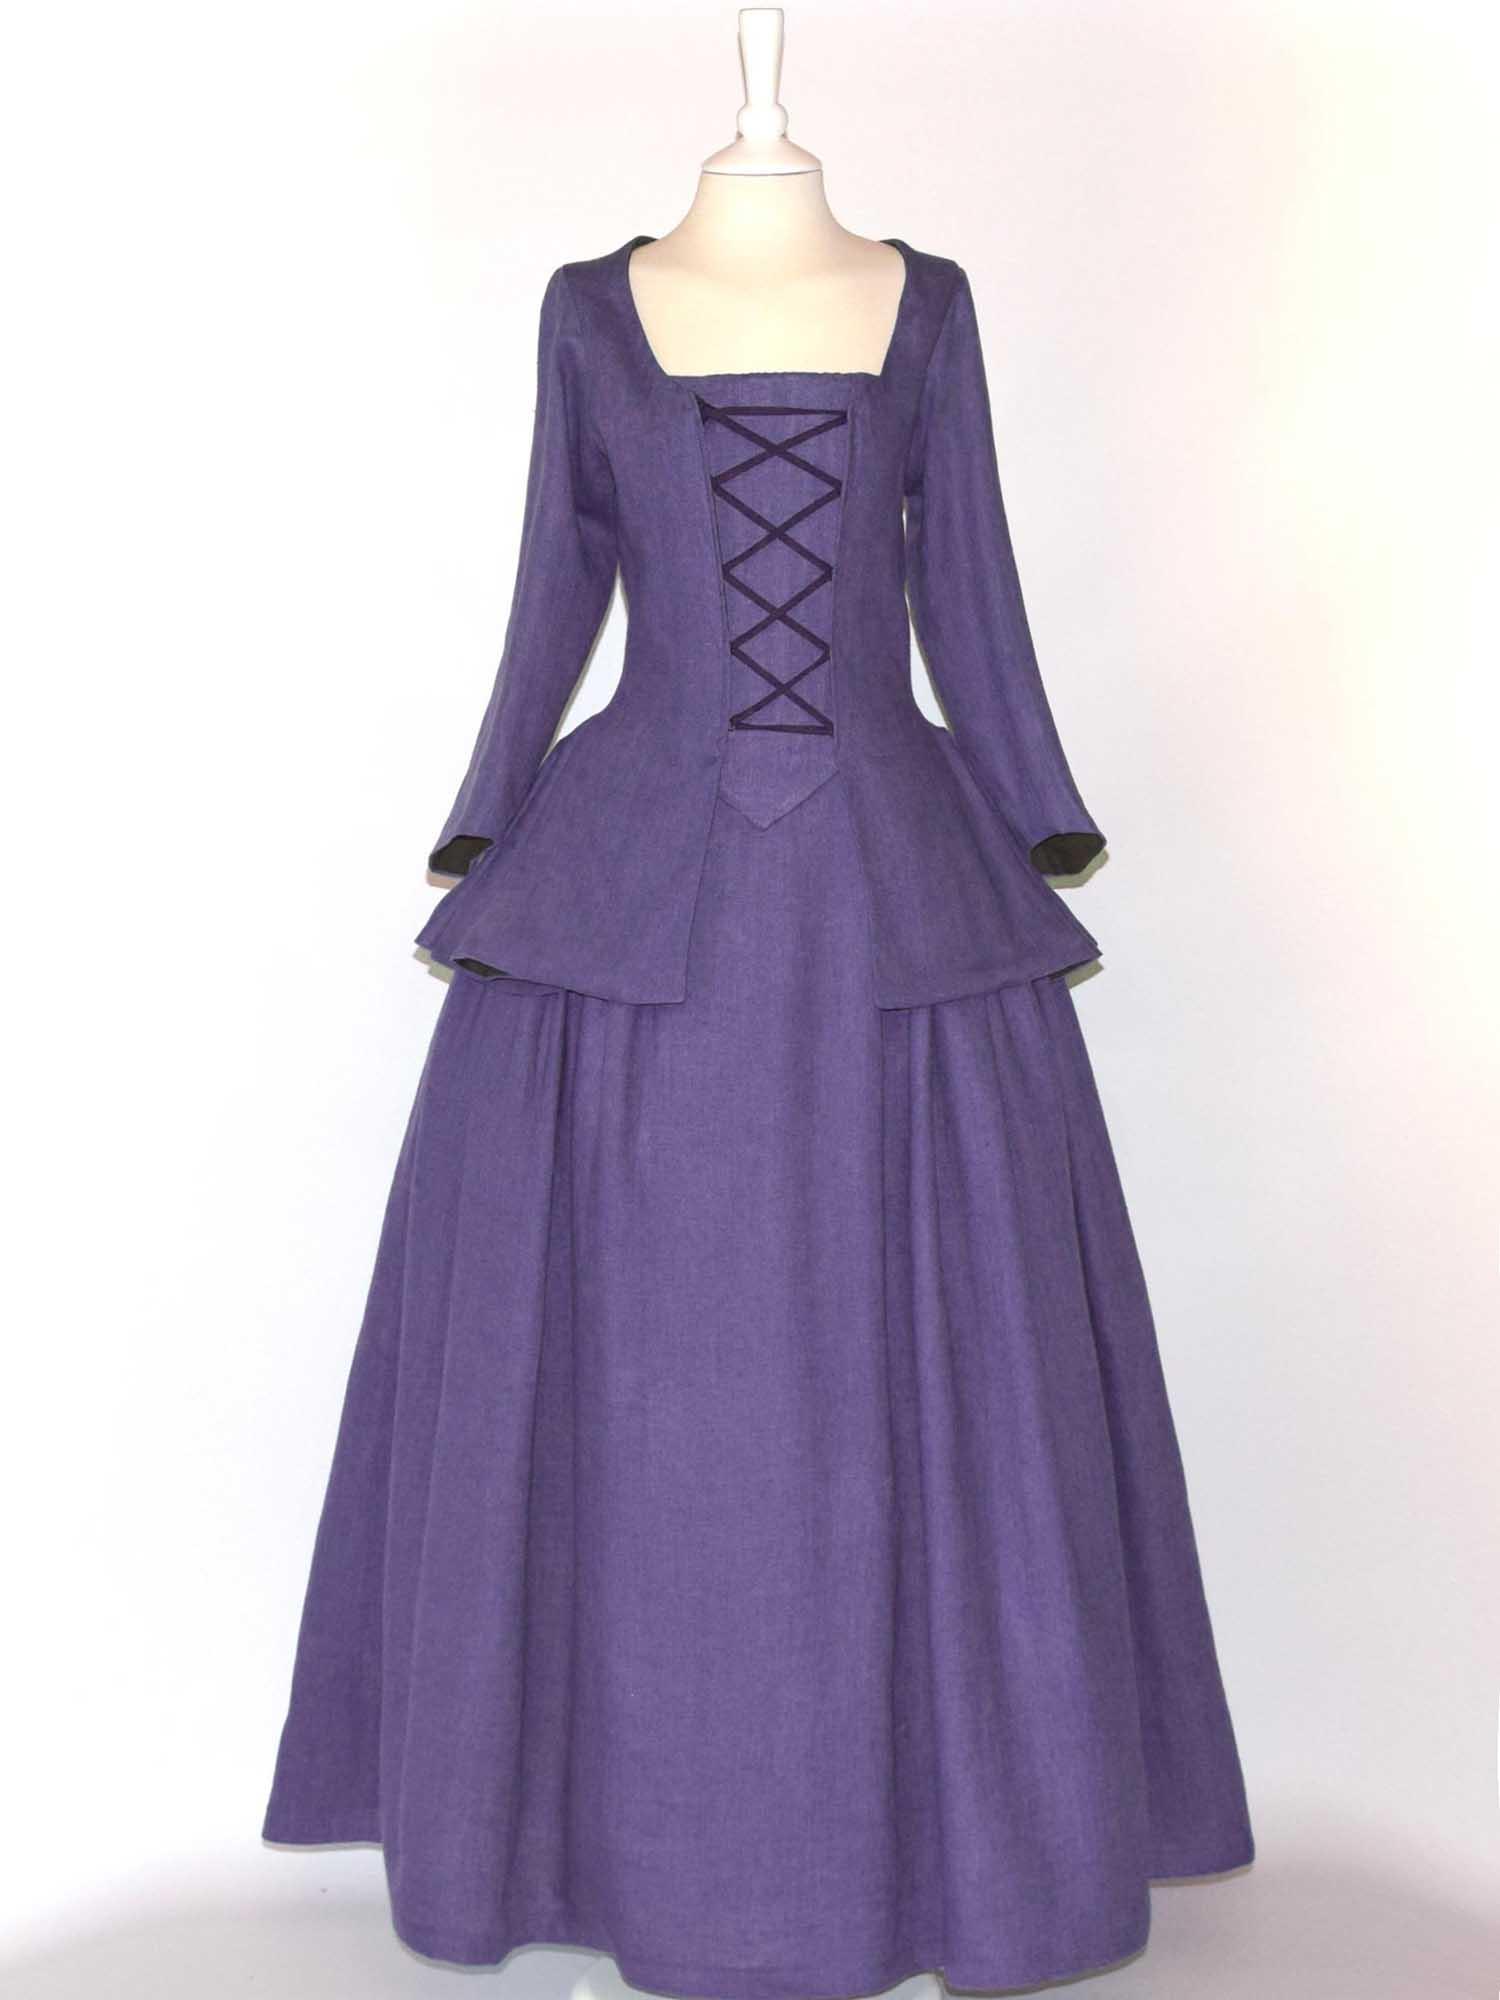 JANET, Colonial Costume in Plum Purple Linen - Atelier Serraspina - Costume 18ème siècle en lin violet